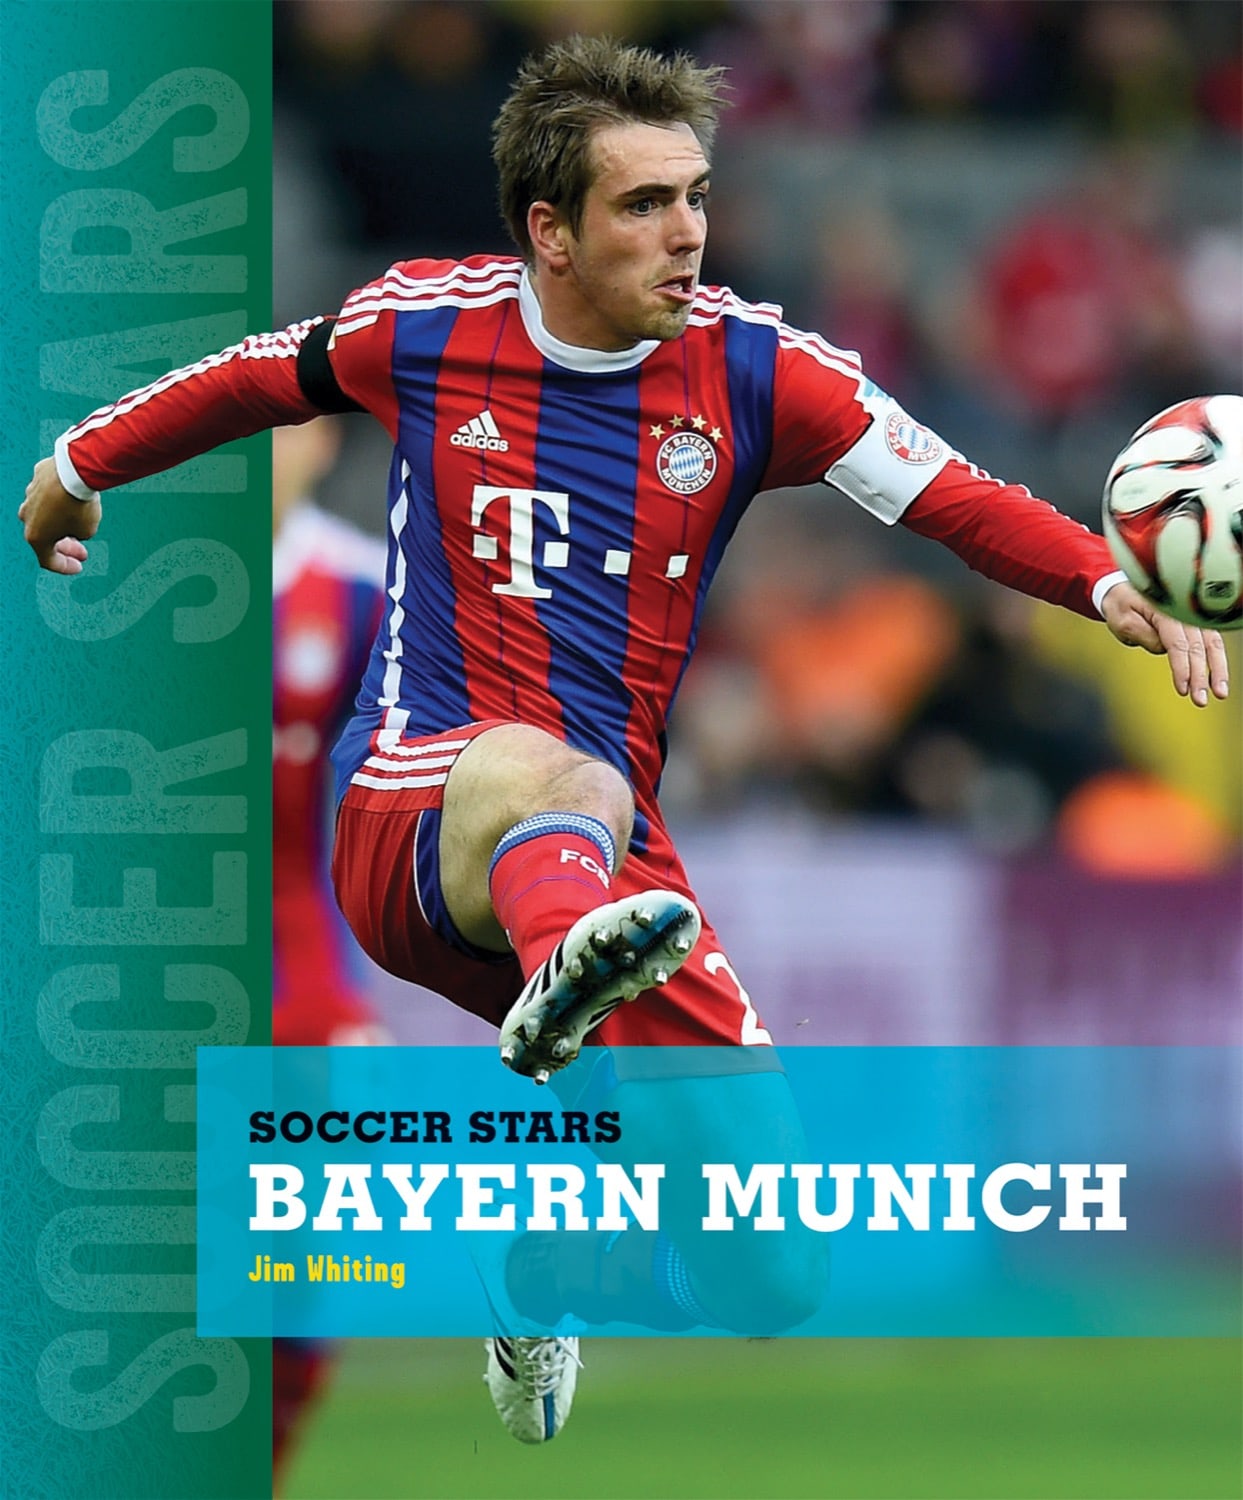 Soccer Stars: Bayern Munich